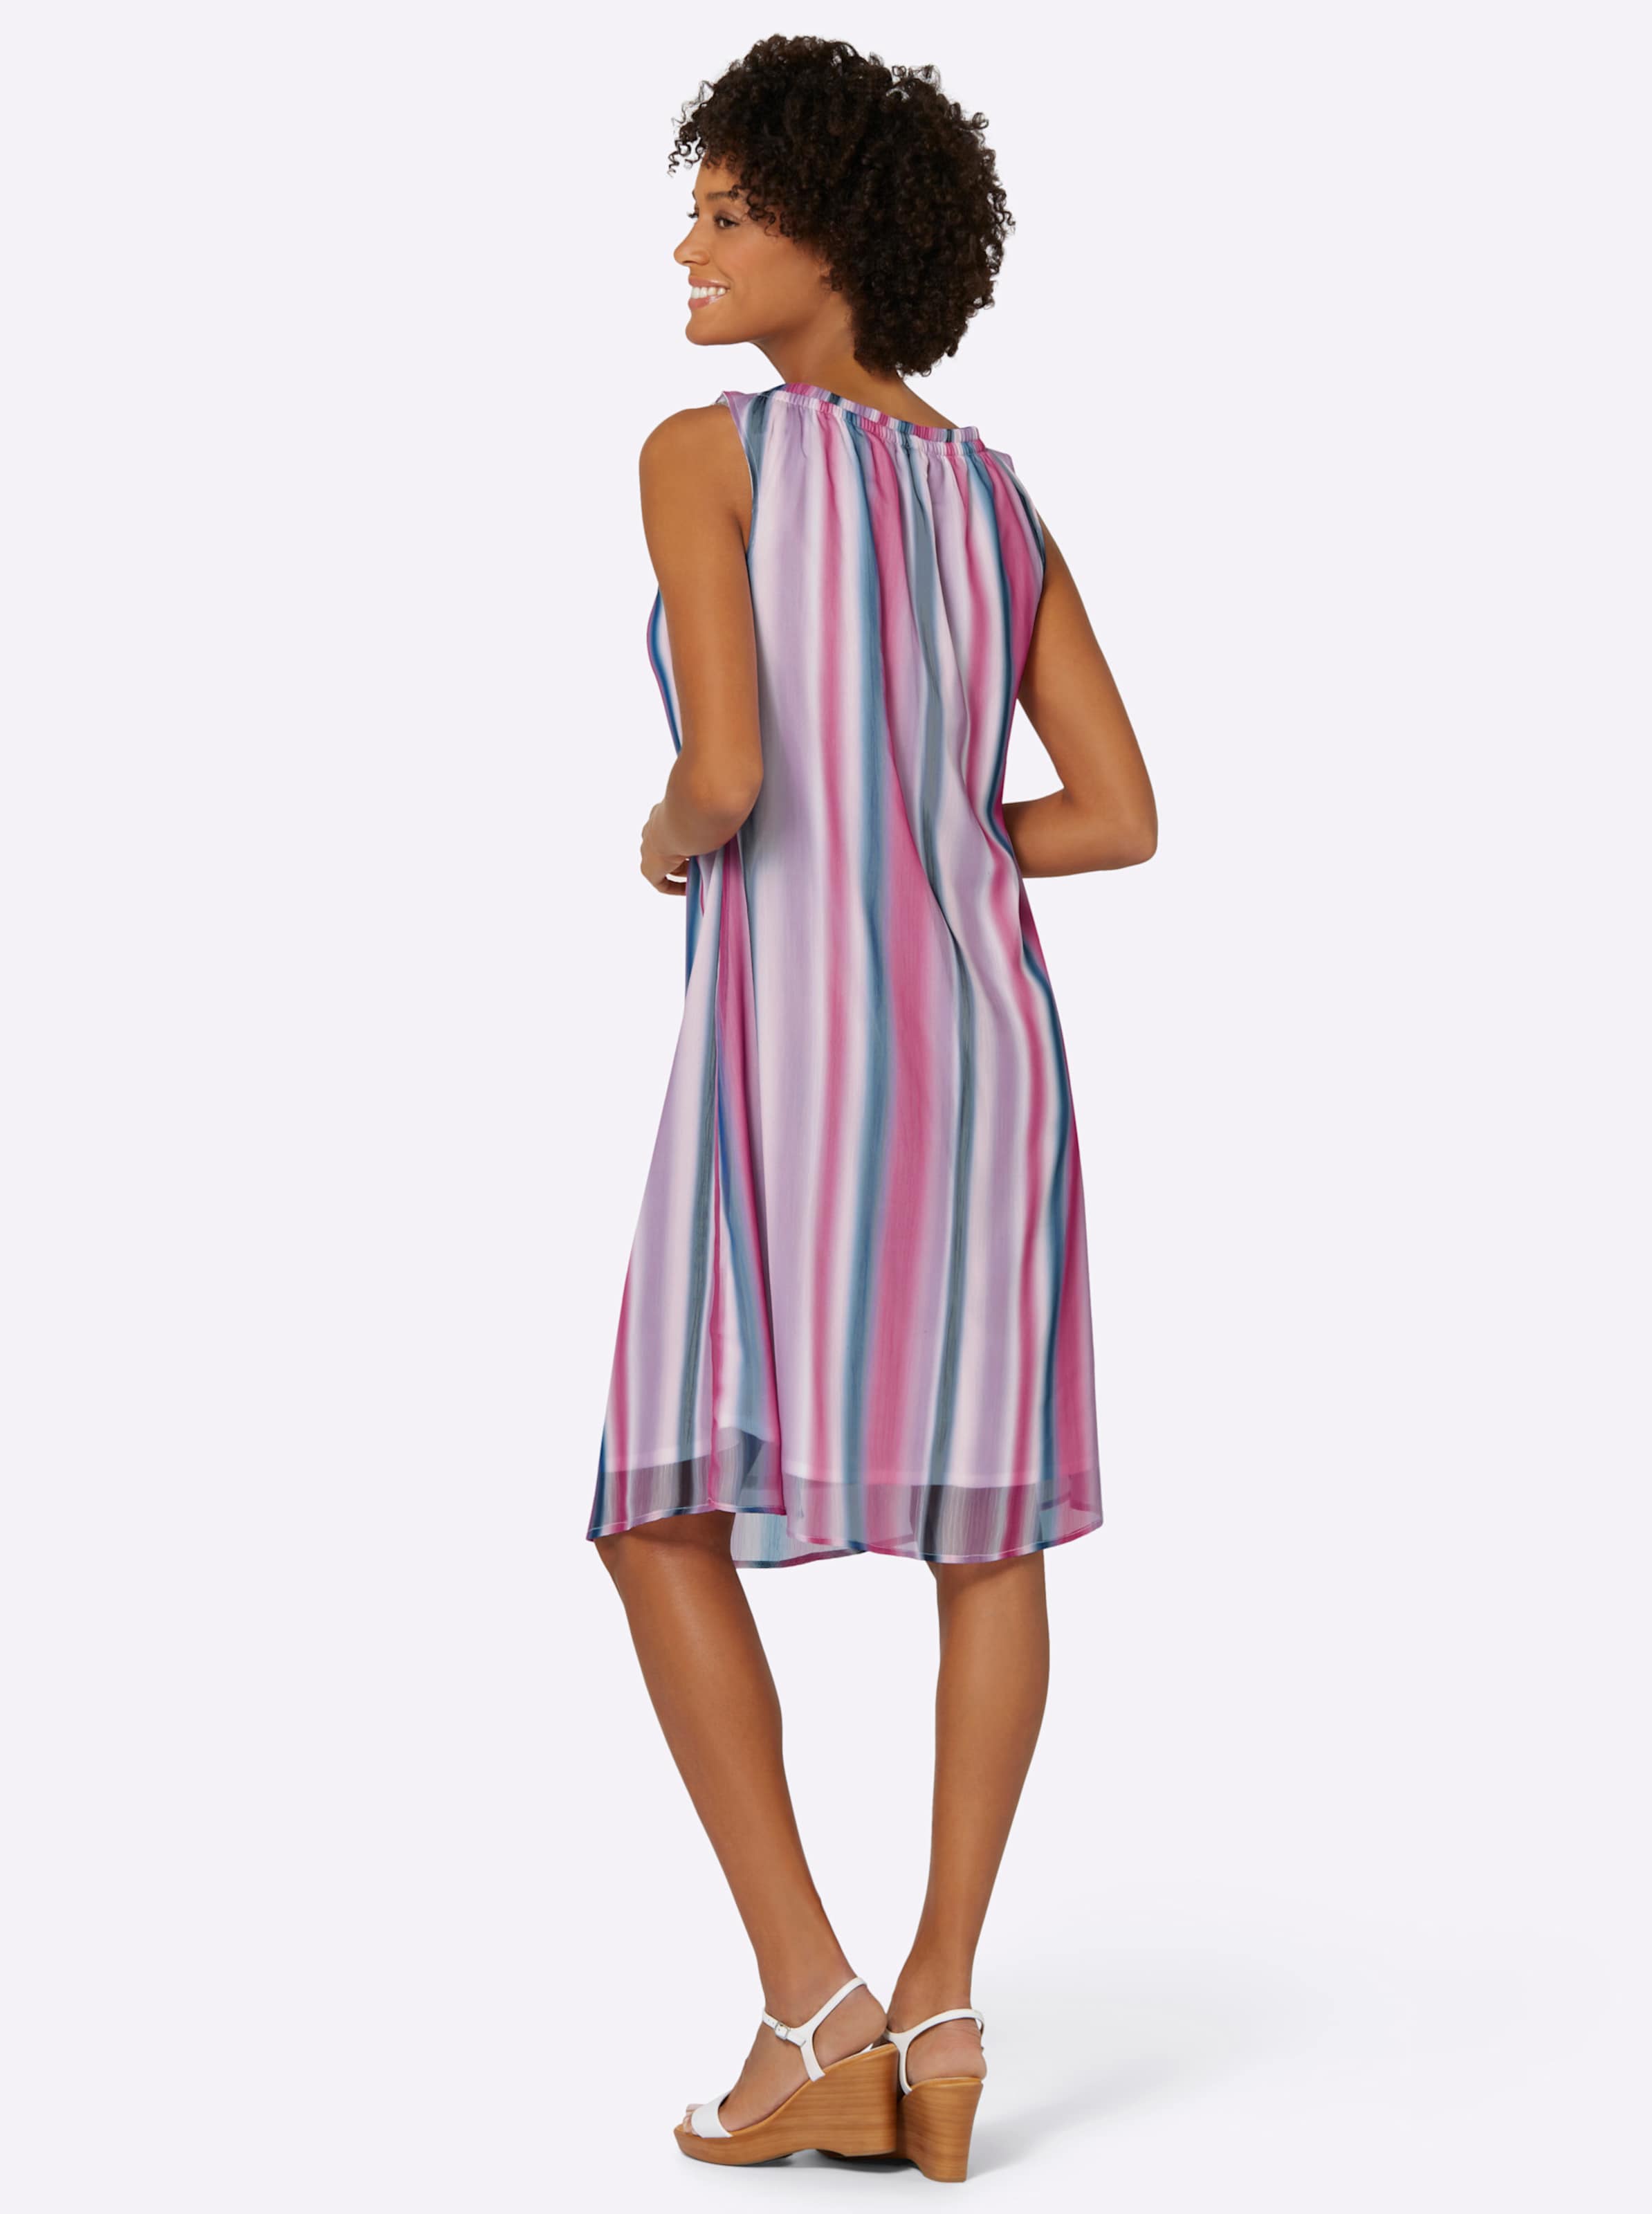 Auf Streife günstig Kaufen-Kleid in fuchsia-bedruckt von heine. Kleid in fuchsia-bedruckt von heine <![CDATA[Ein Figurschmeichler ist dieses Kleid im abstrakten Streifen-Dessin mit Farbverlauf. Der weite, elastische Rundhals-Ausschnitt ist leicht in Falten gelegt. Die dezent transp